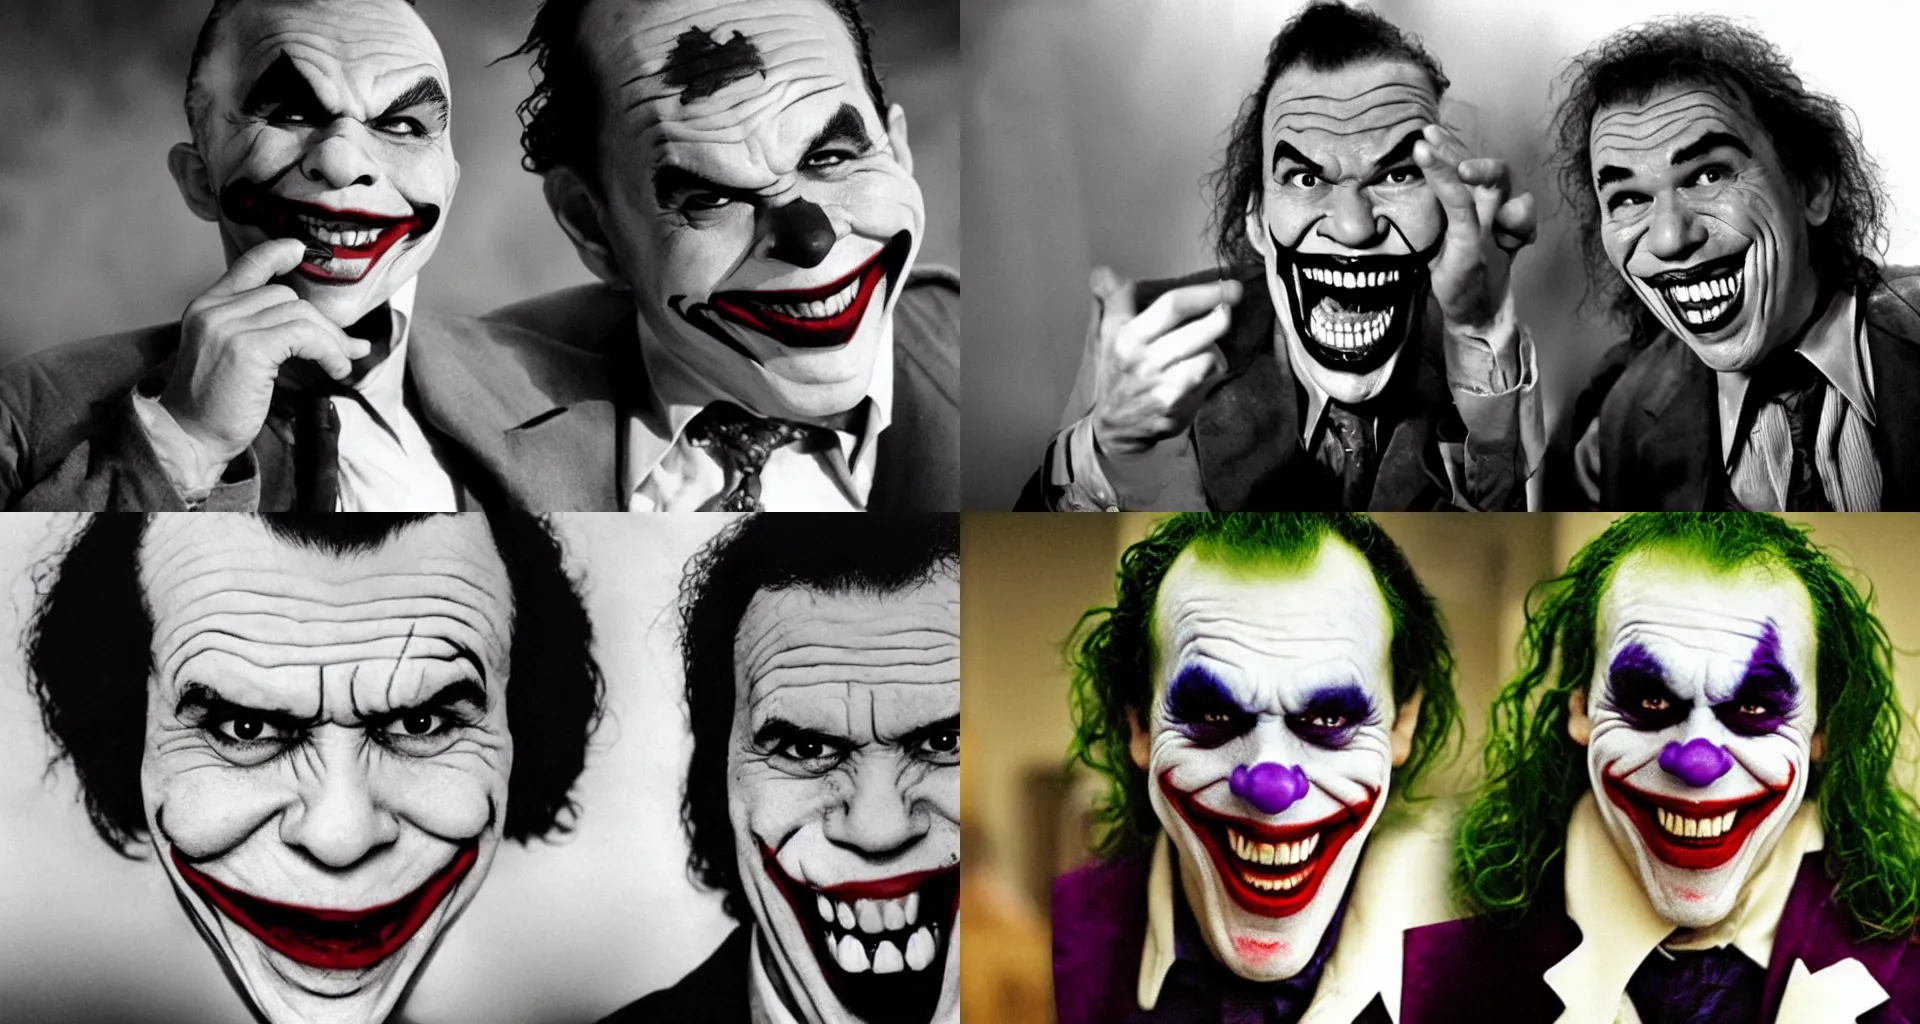 Prompt: Gilbert Gottfried as The Joker